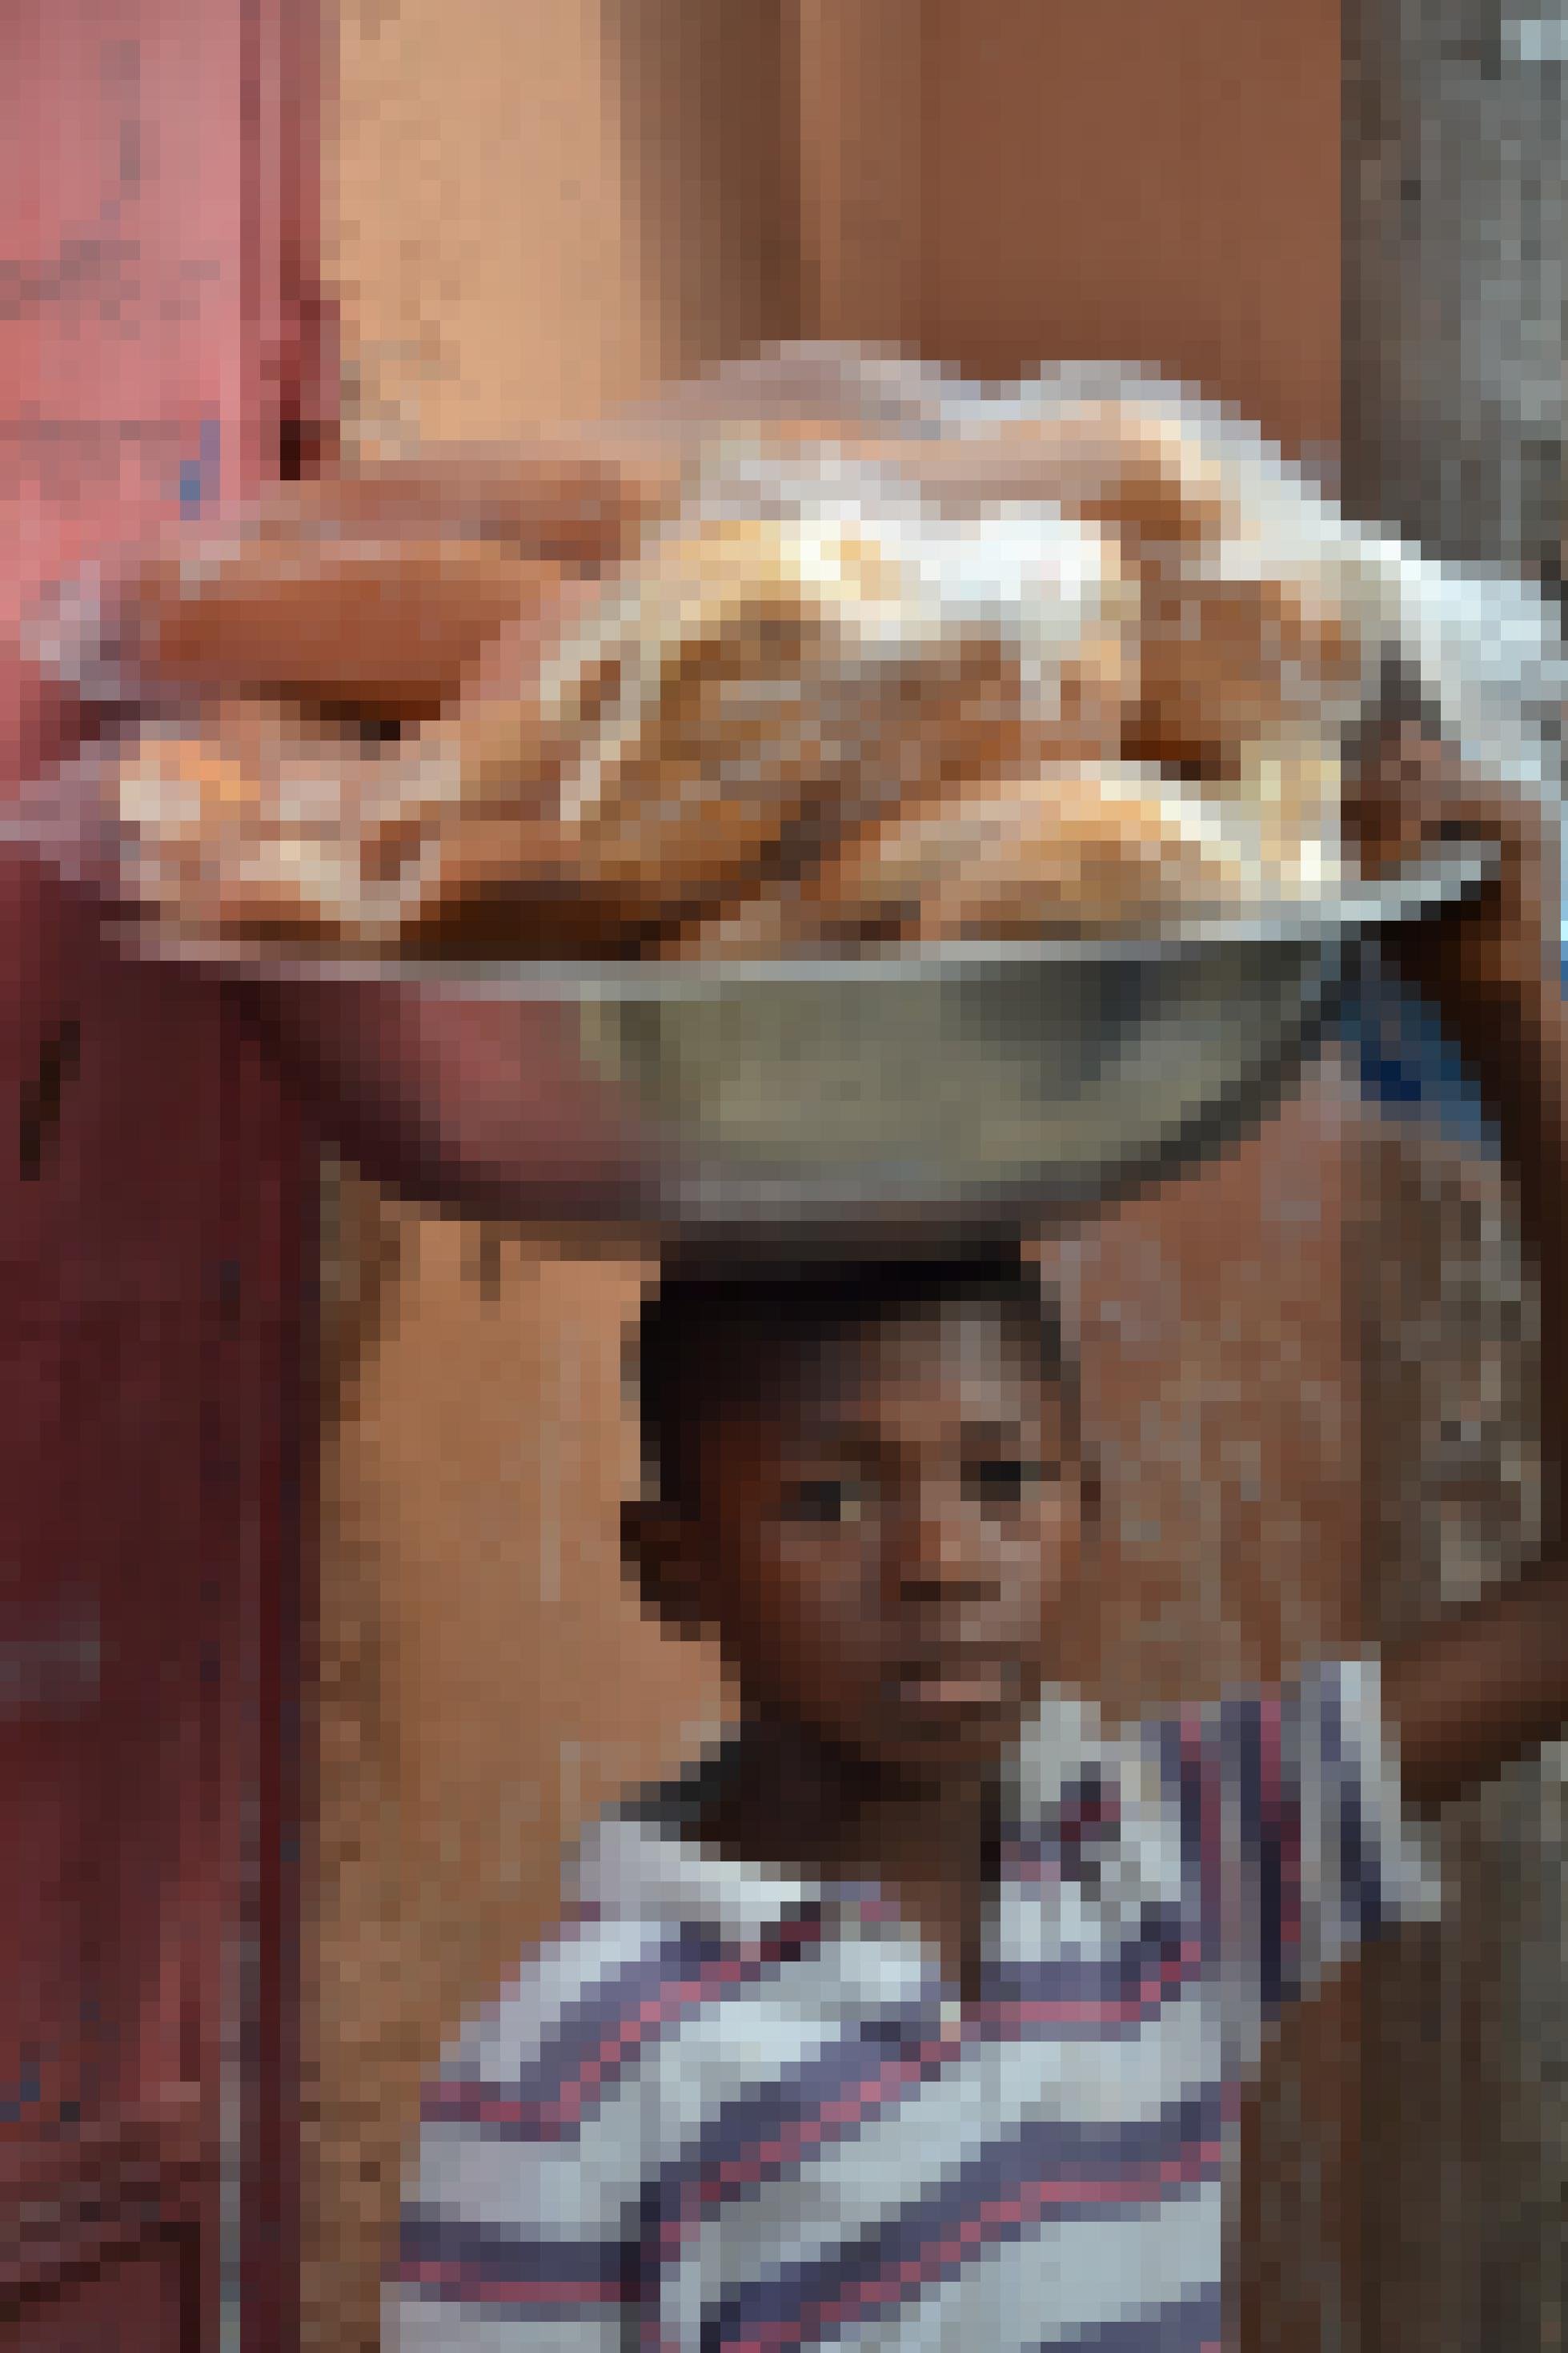 Ein kleiner Junge mit einer grossen Aluschüssel voller Brot auf dem Kopf.